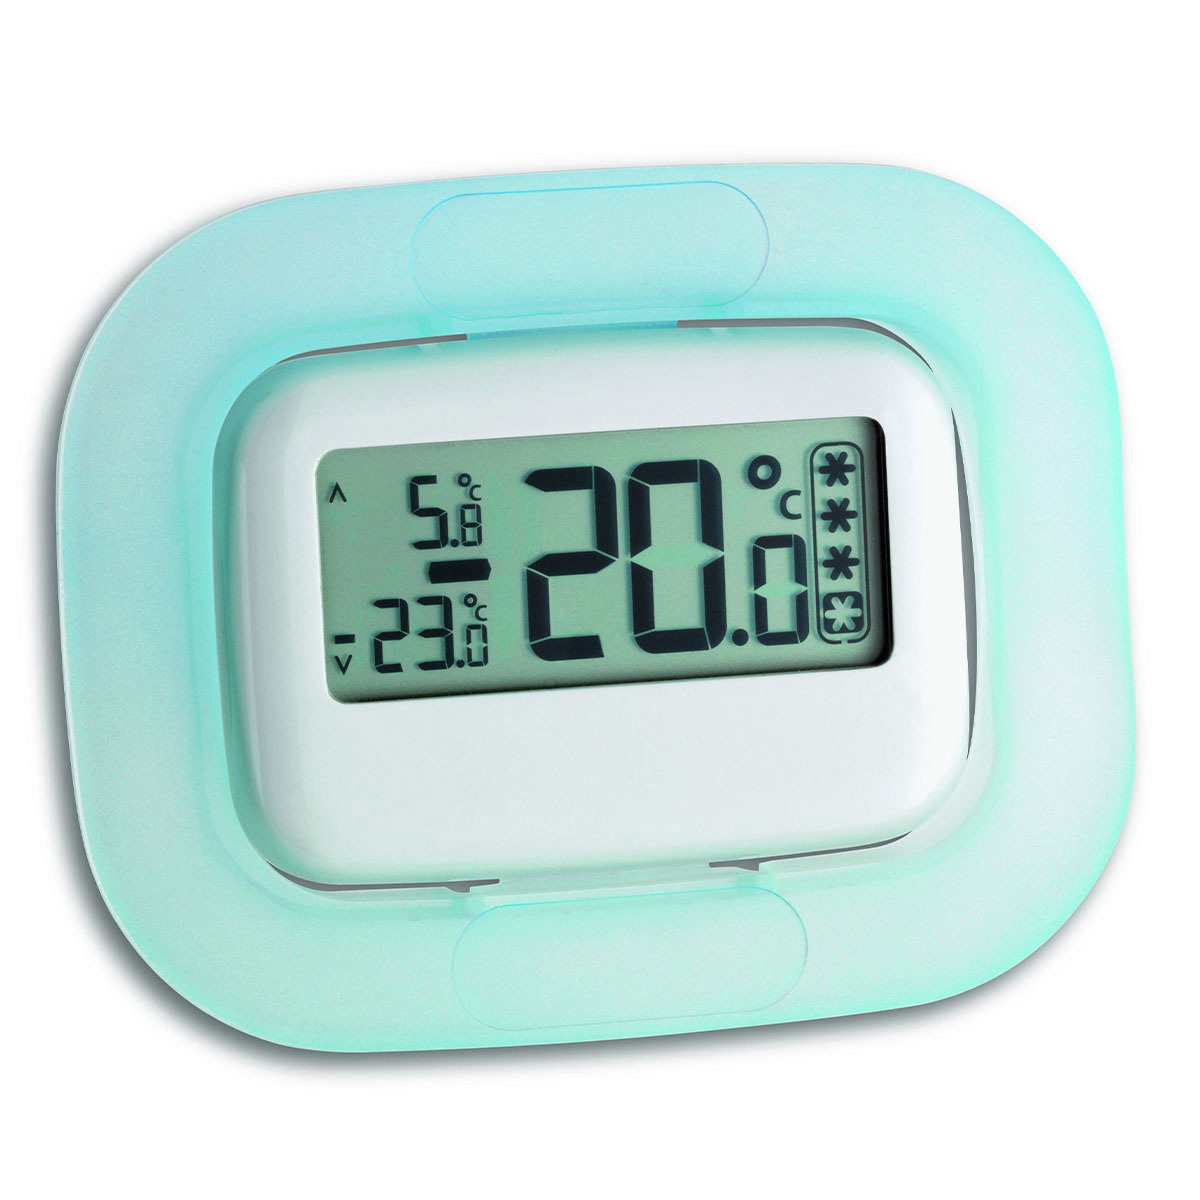 Szaerfa Präzise Digitalkühlschrank Tiefkühlschrank Thermometer Raumthermometer Kühlschrank-Thermometer LCD Bildschirm Celsius oder Fahrenheit 